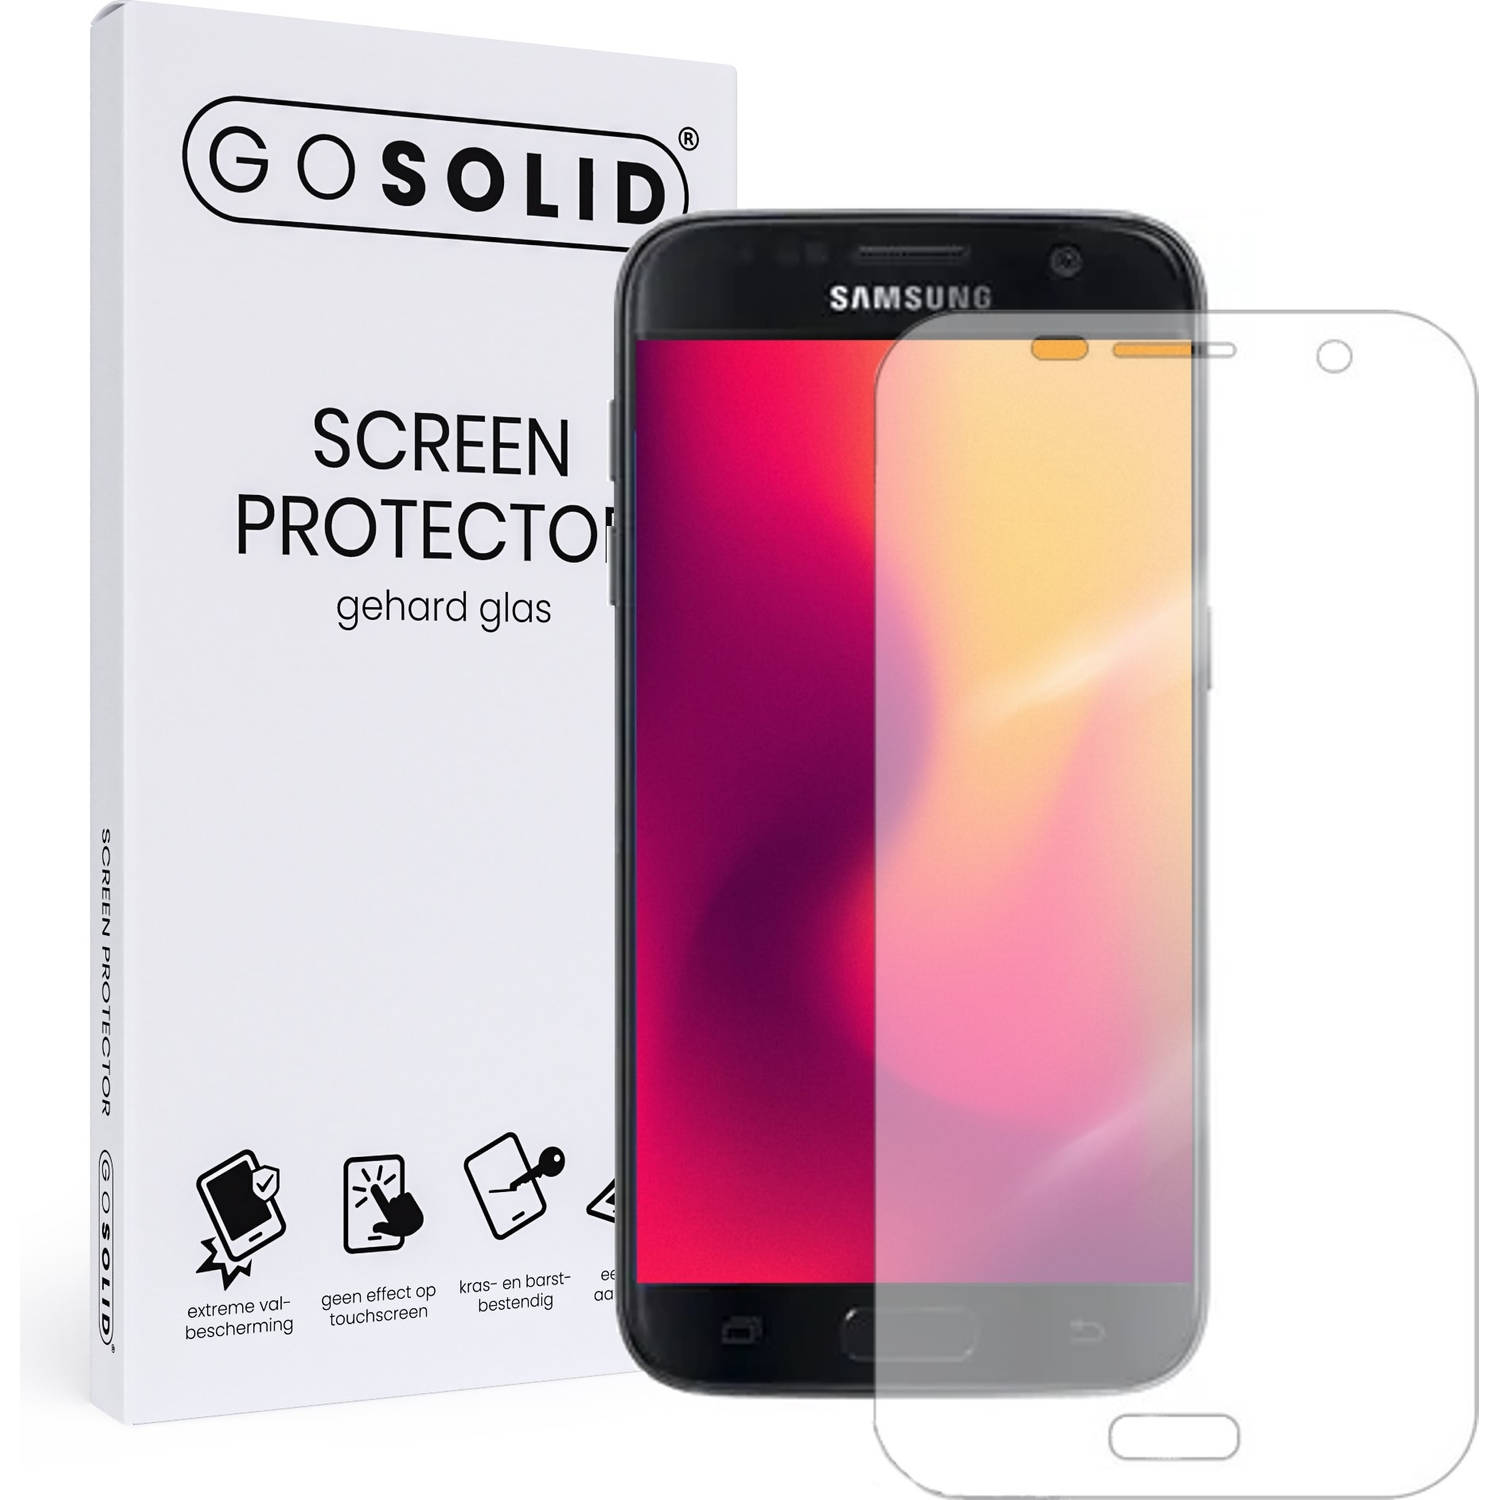 GO SOLID! Screenprotector voor Samsung S6 Edge Plus